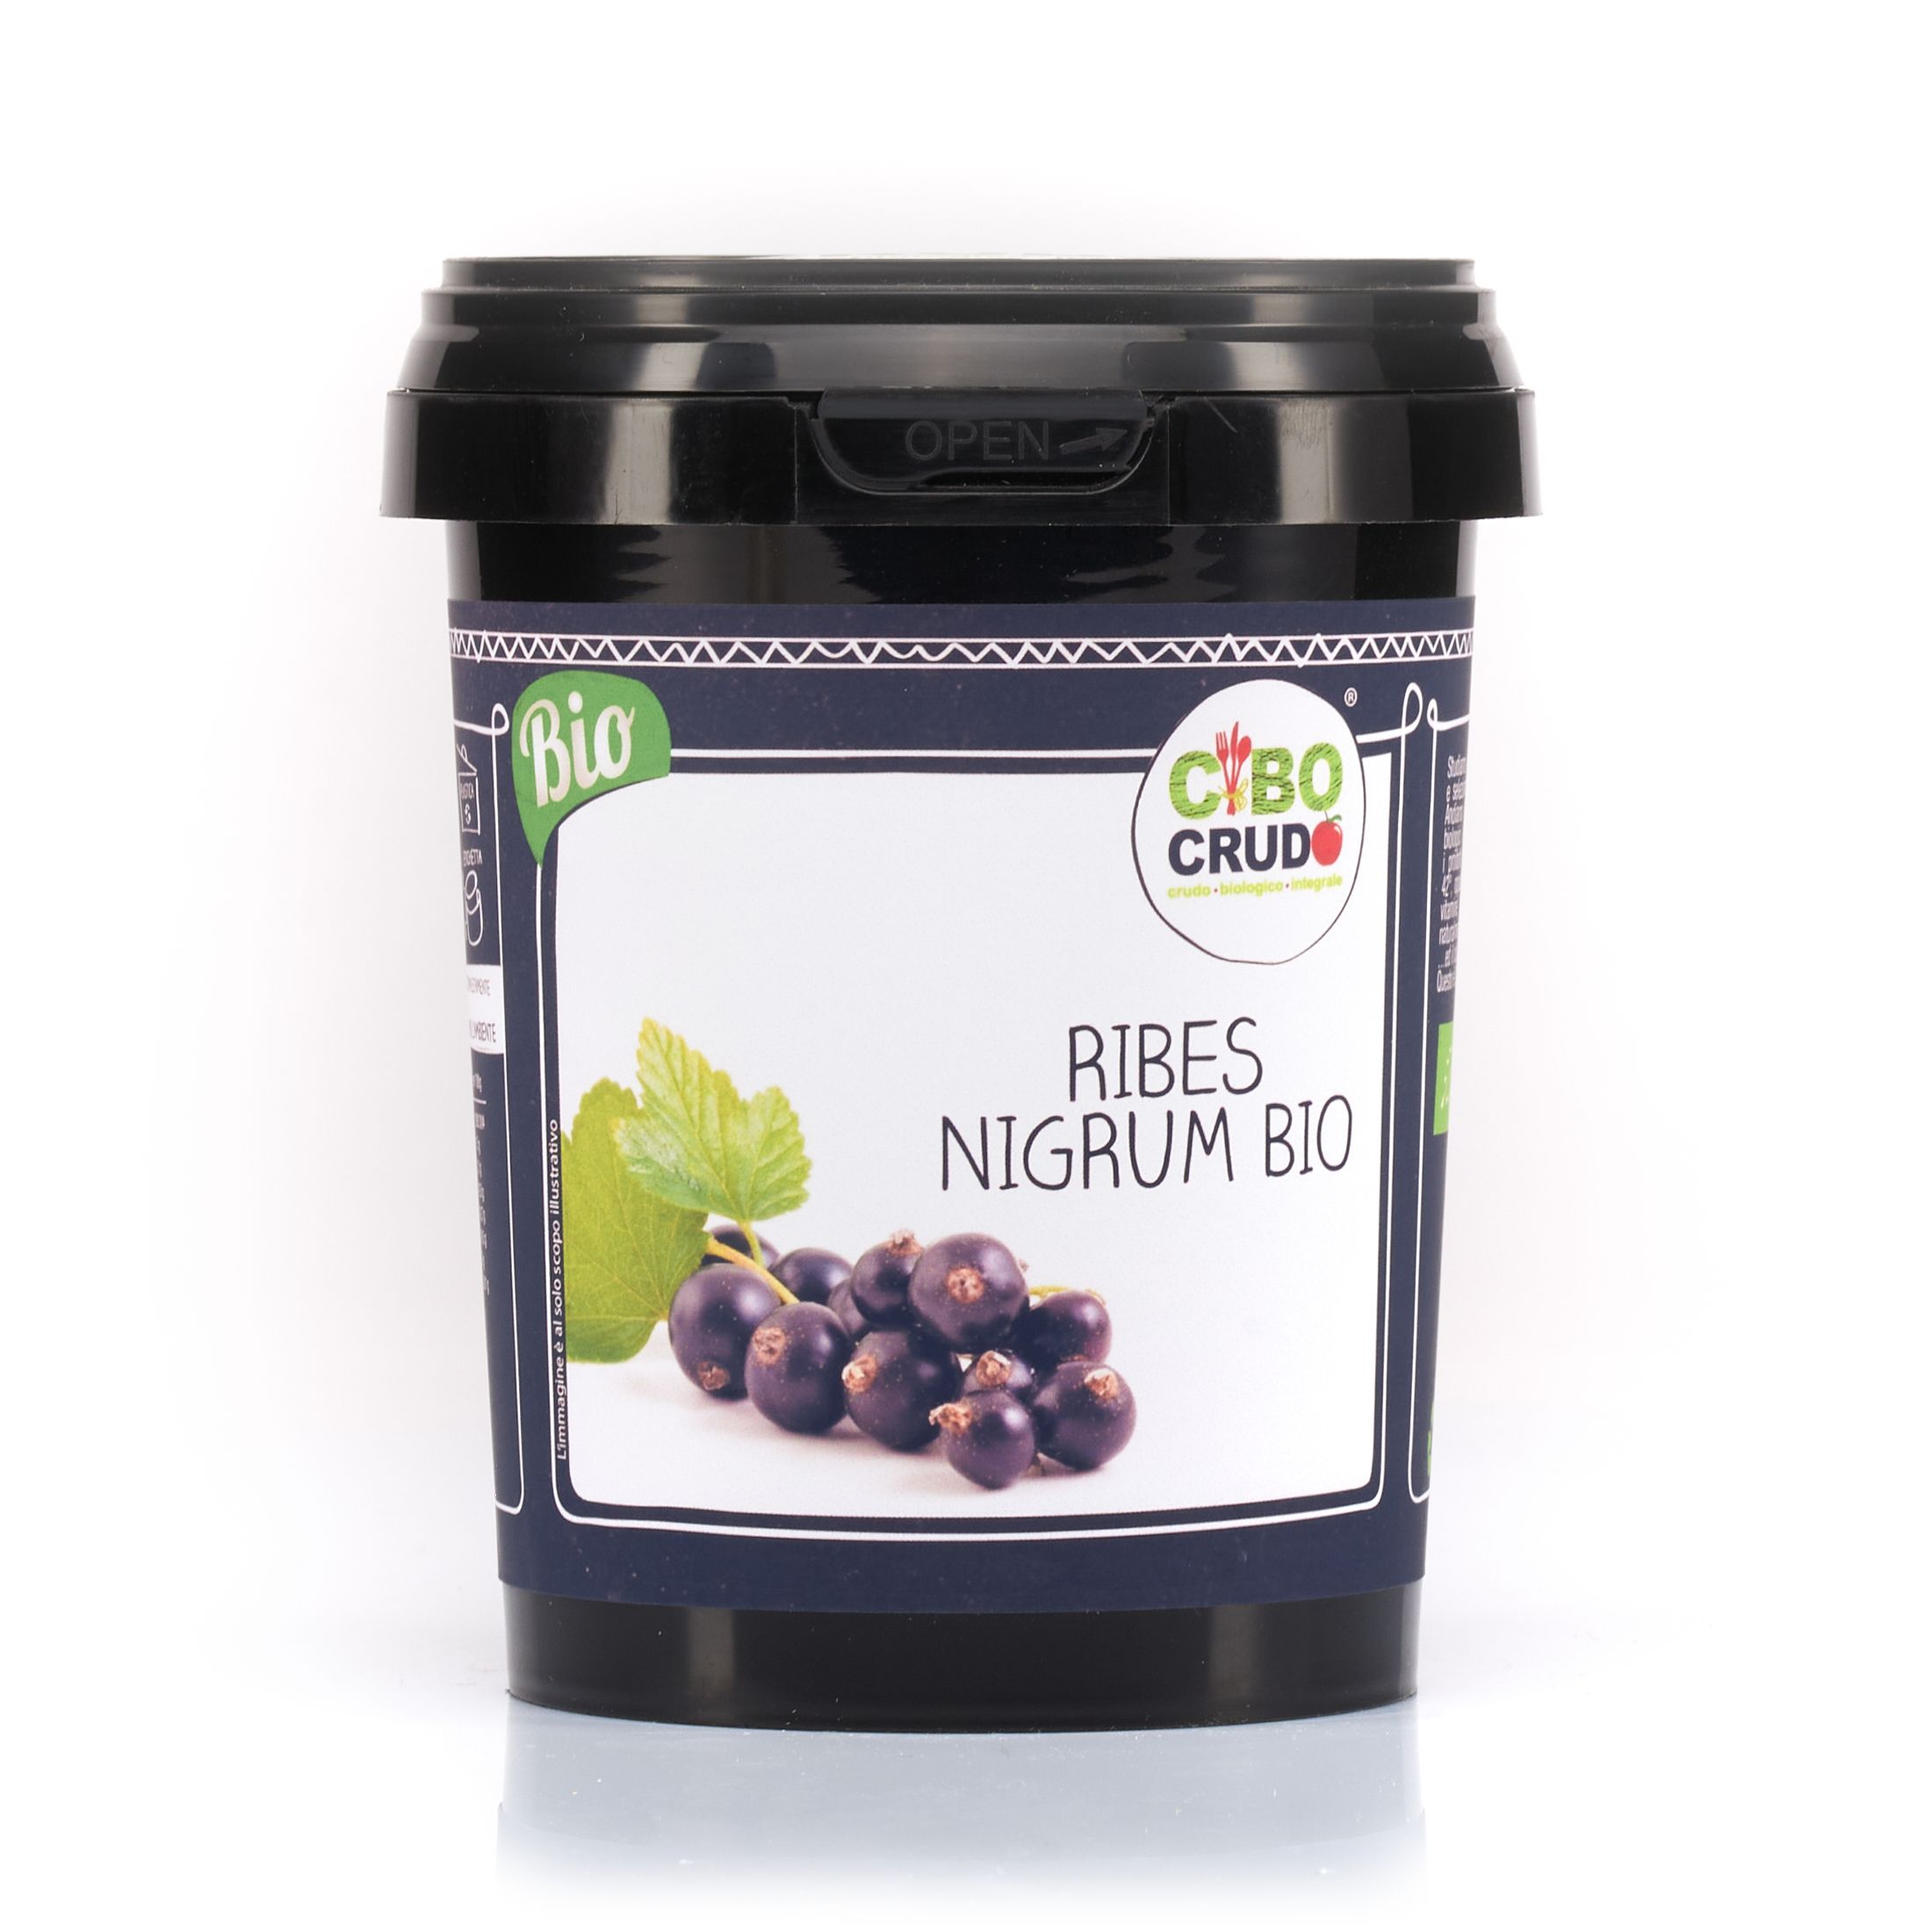 Ribes Nigrum Bio